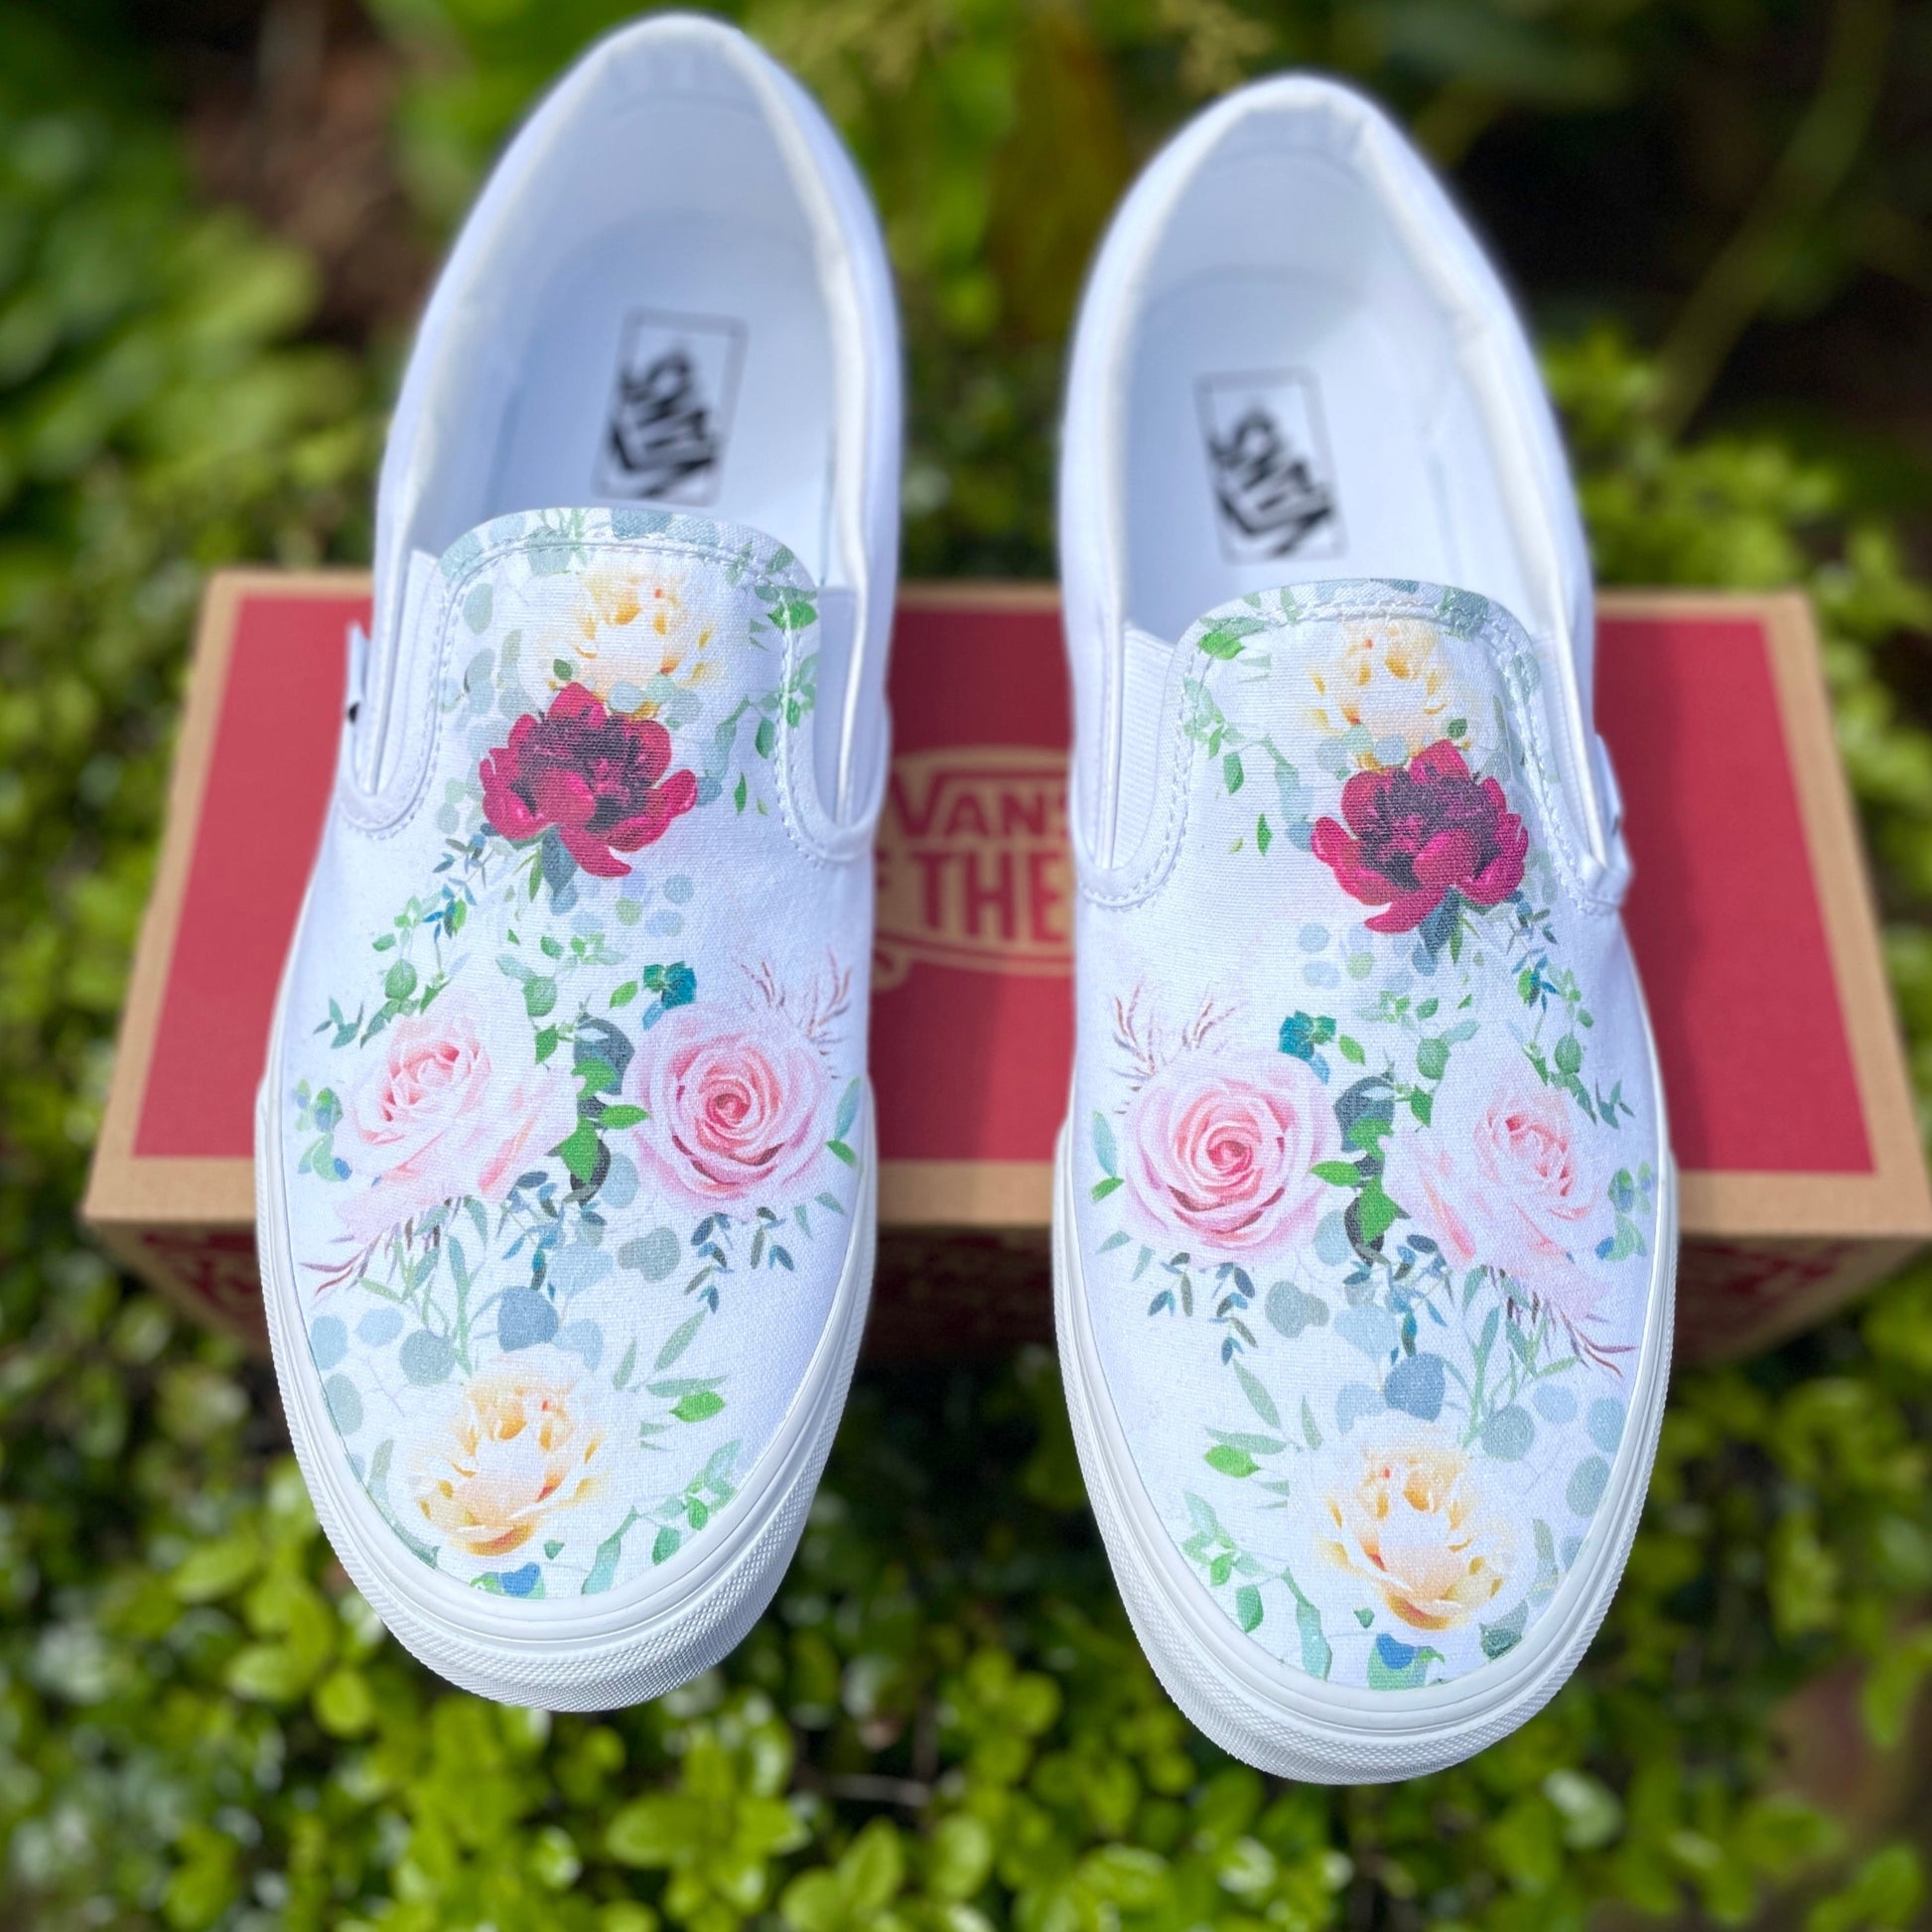 Wedding Floral Vans Slip On Shoes for Bride